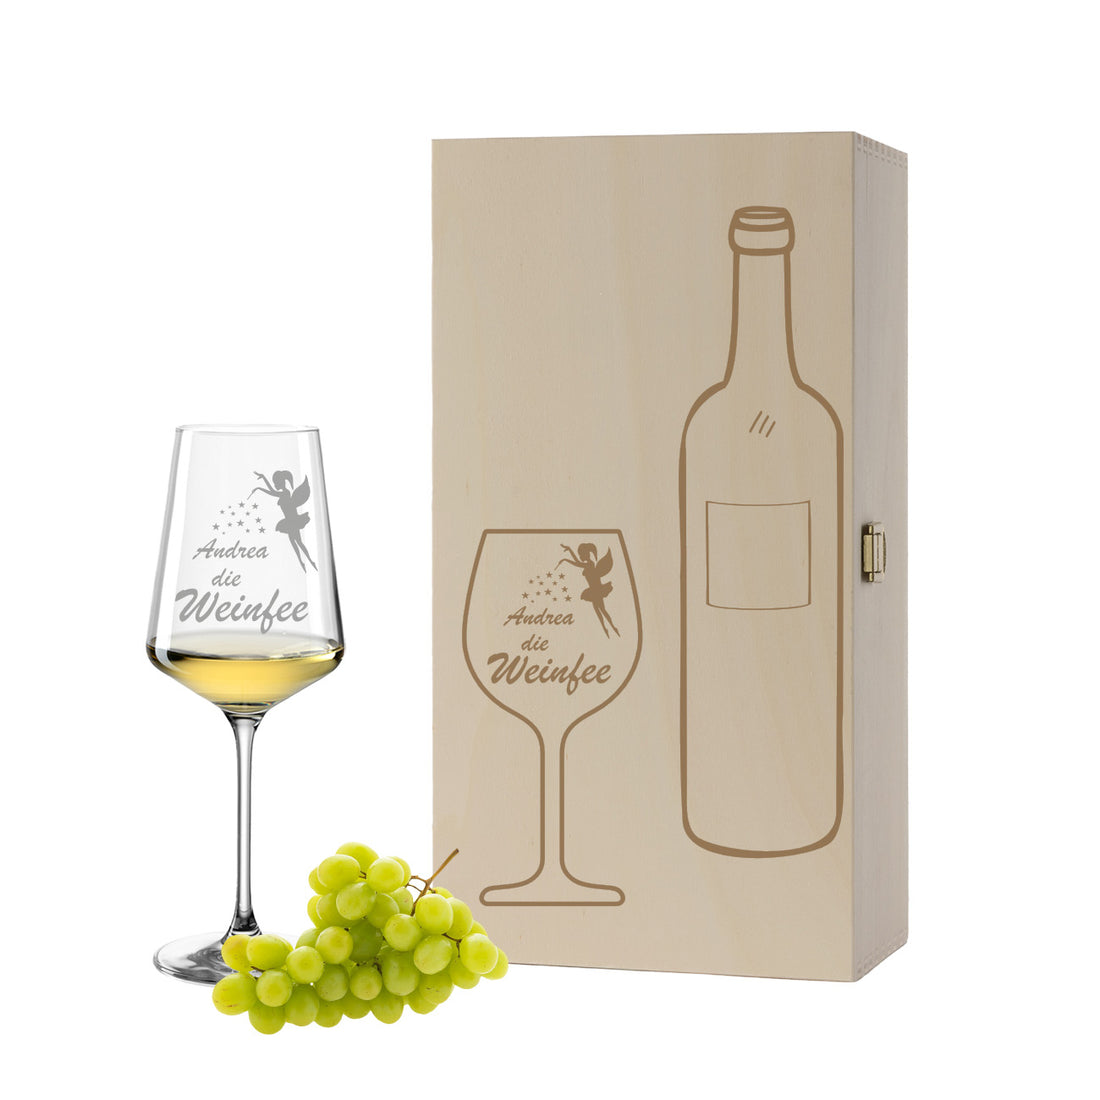 Weinglas mit Gravur Leonardo Puccini "Wunschname DIE WEINFEE" inkl. Holzbox klein mit Wunschname